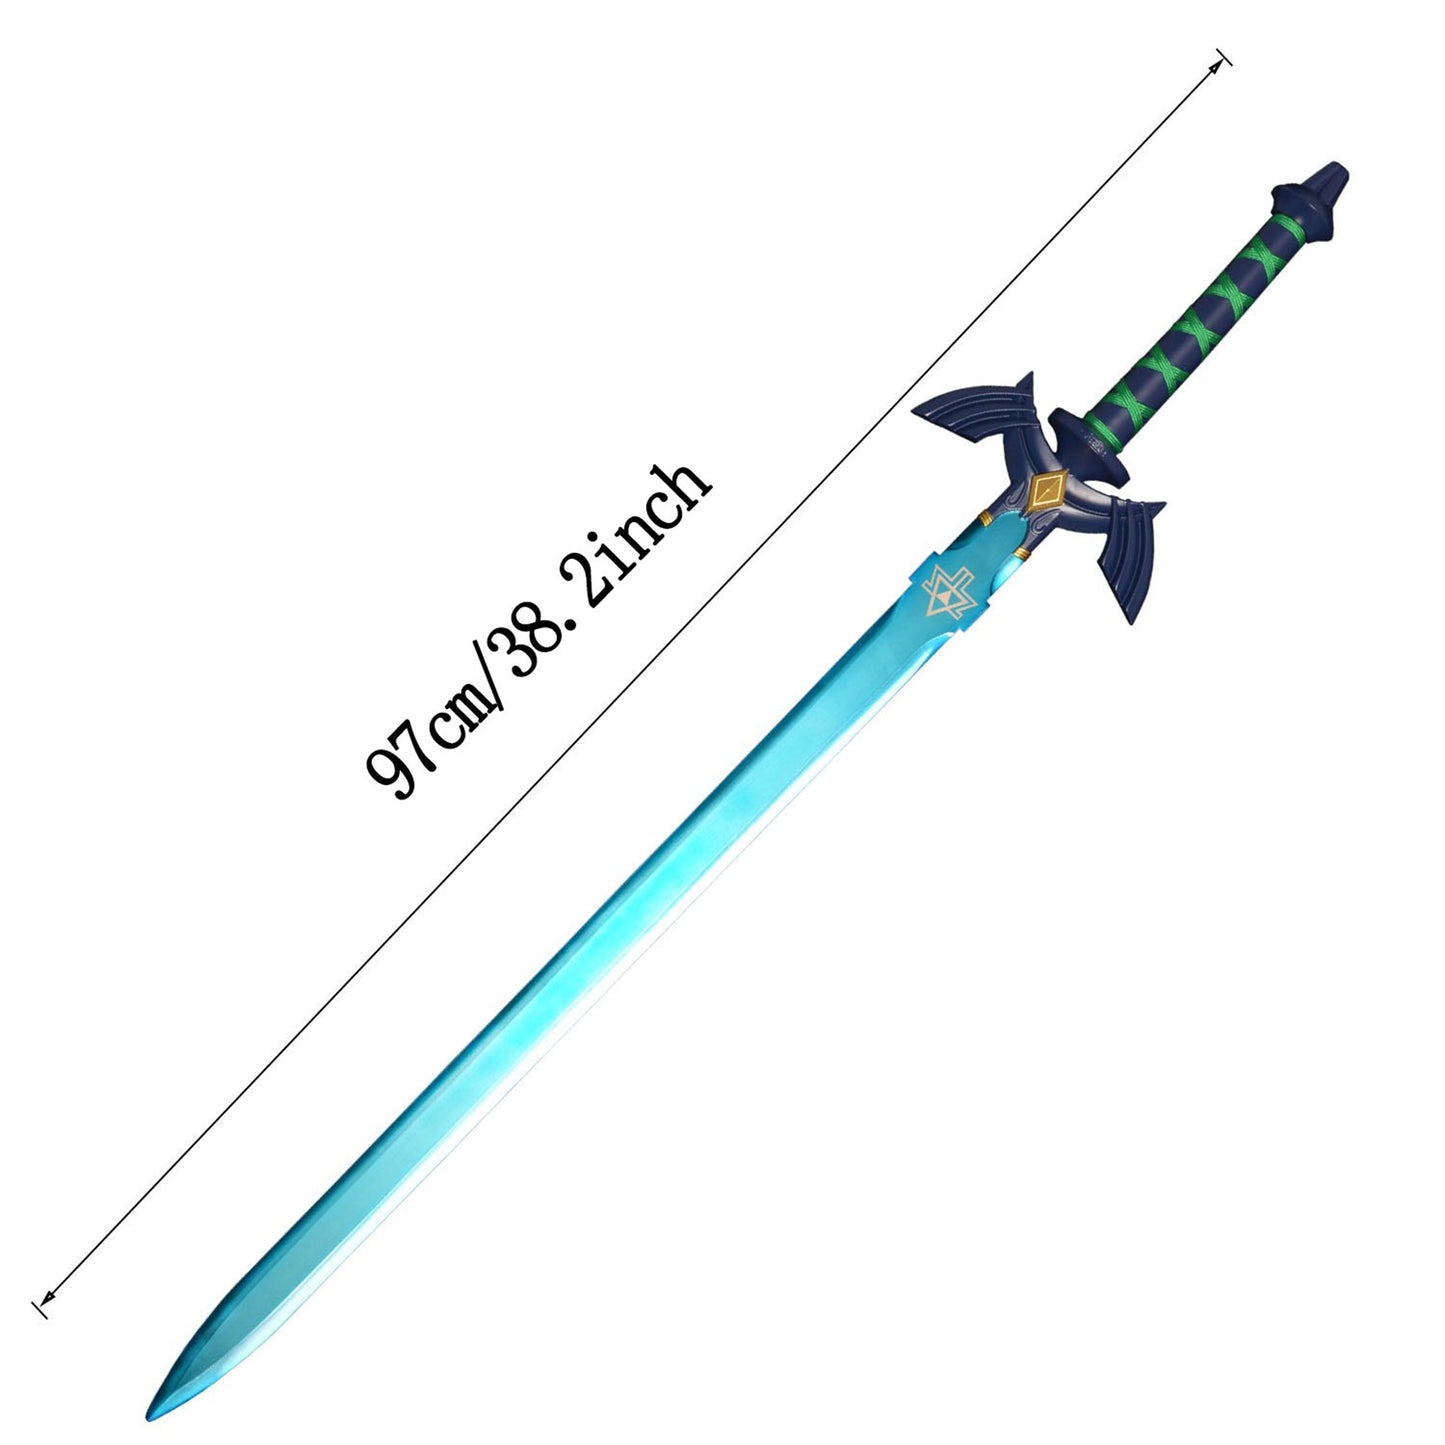 38" Link Master Sword Blue Blade Metal Replica Cosplay Prop